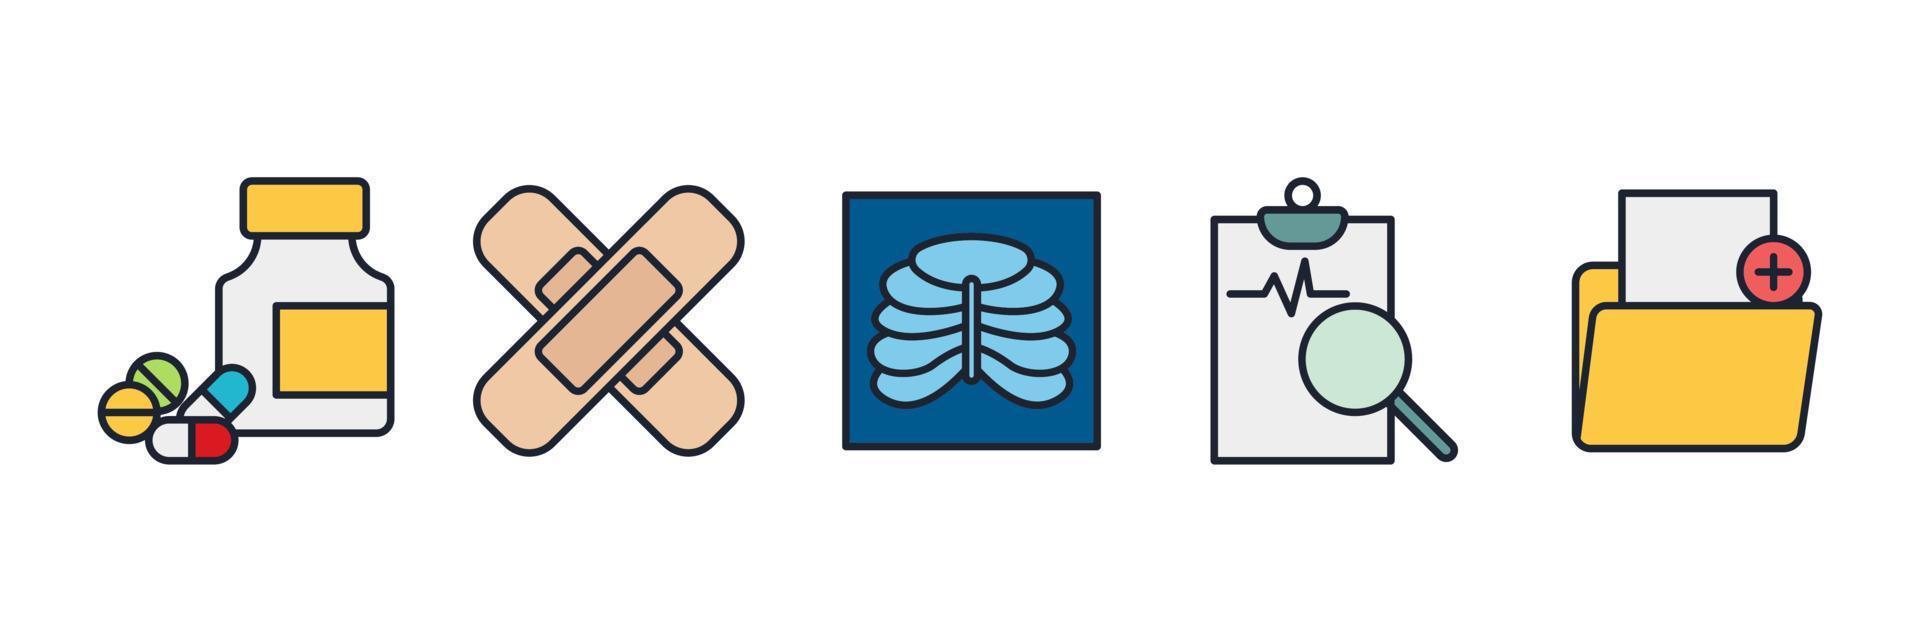 Medizin und Gesundheit setzen Symbolsymbolvorlage für Grafik- und Webdesign-Sammlung Logo-Vektorillustration vektor